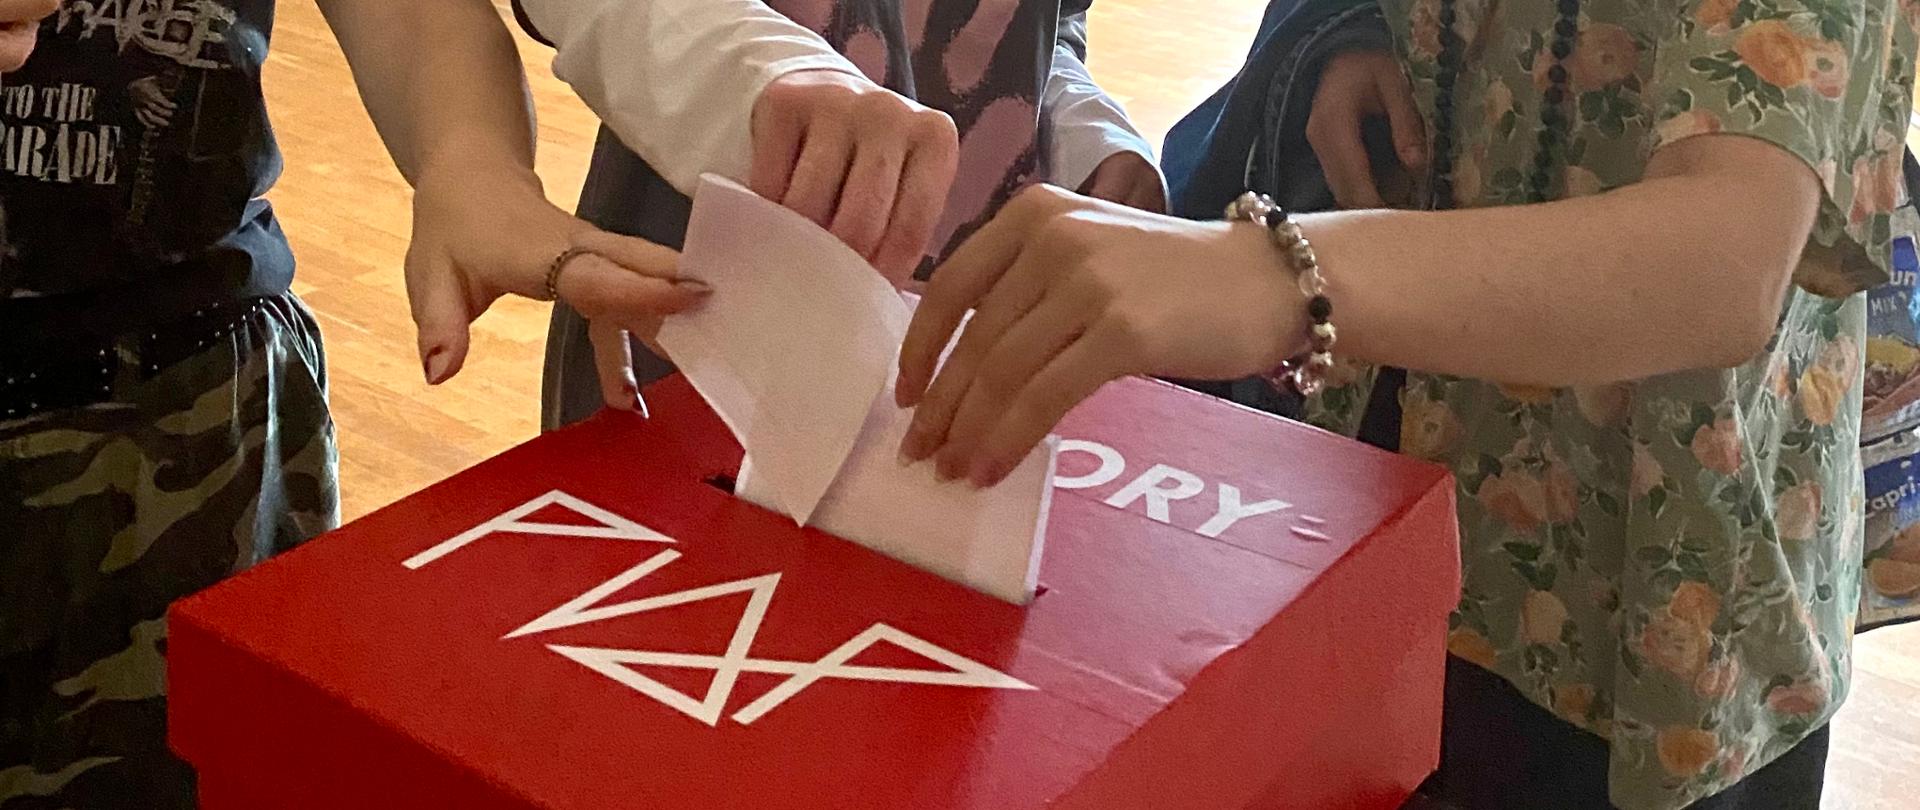 Trzy uczennice wrzucające jednocześnie swoje karty wyborcze do czerwonej urny wyborczej z białym logo szkoły i napisem wybory. Osoby są uśmiechnięte z wyciągniętymi rękoma w kierunku urny, ubrane we wzorzyste koszulki.